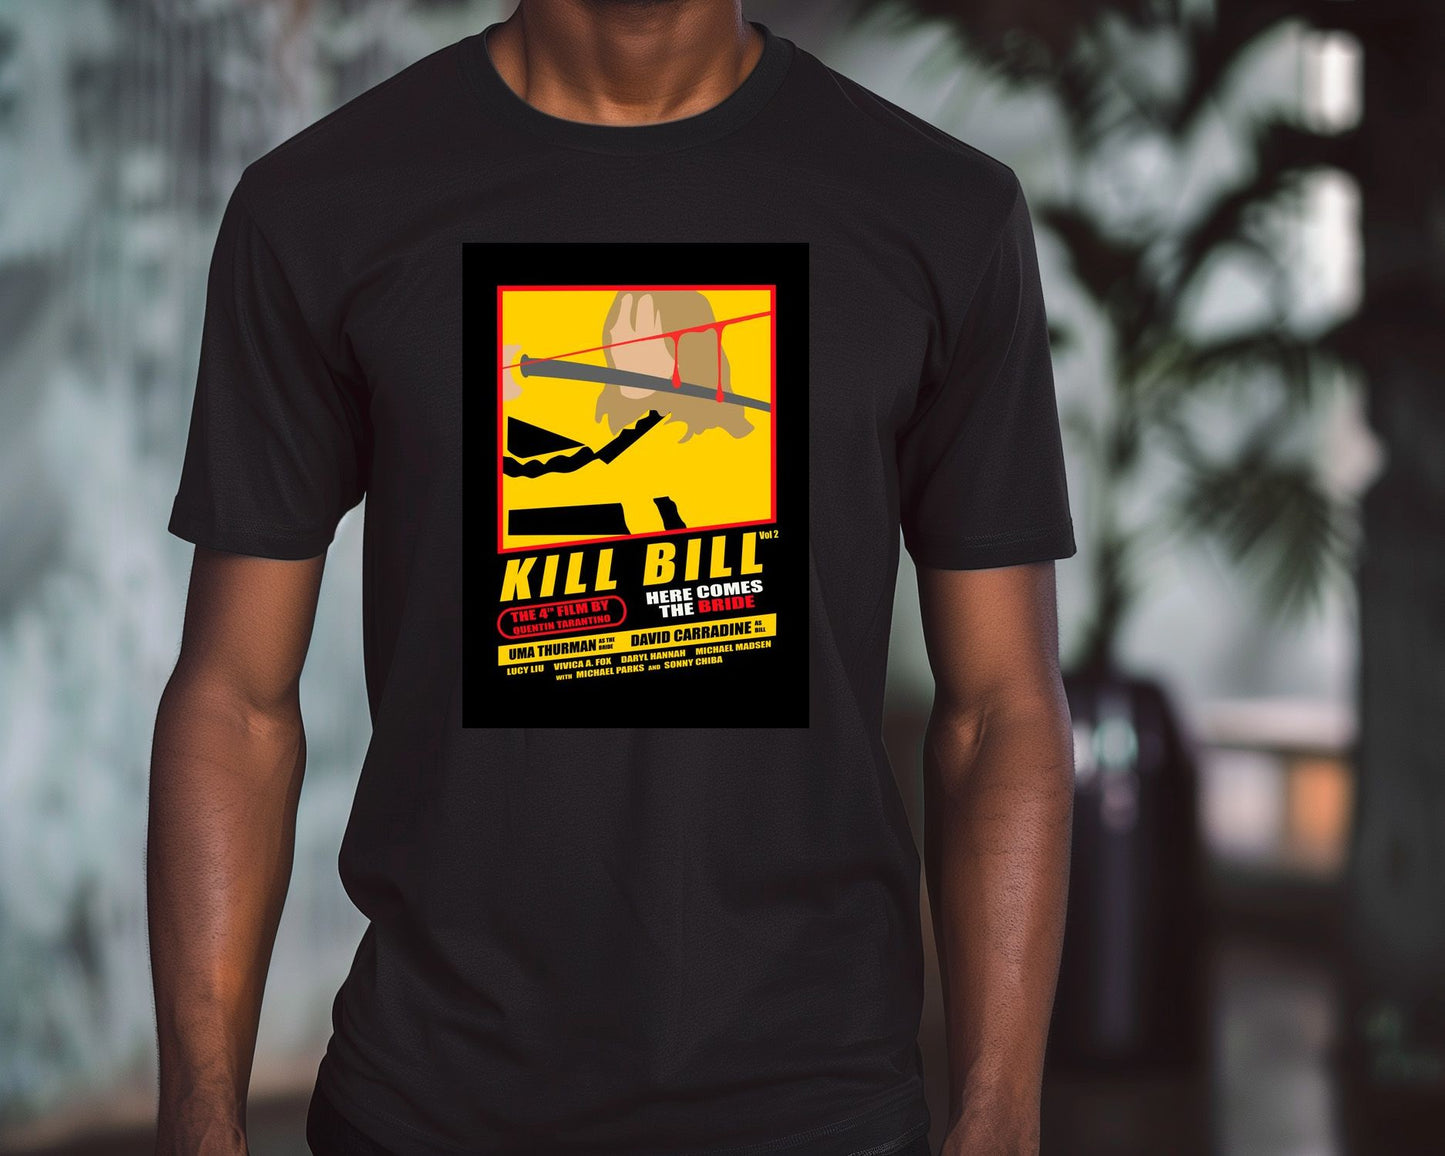 Kill bill vol 2 - @insaneclown